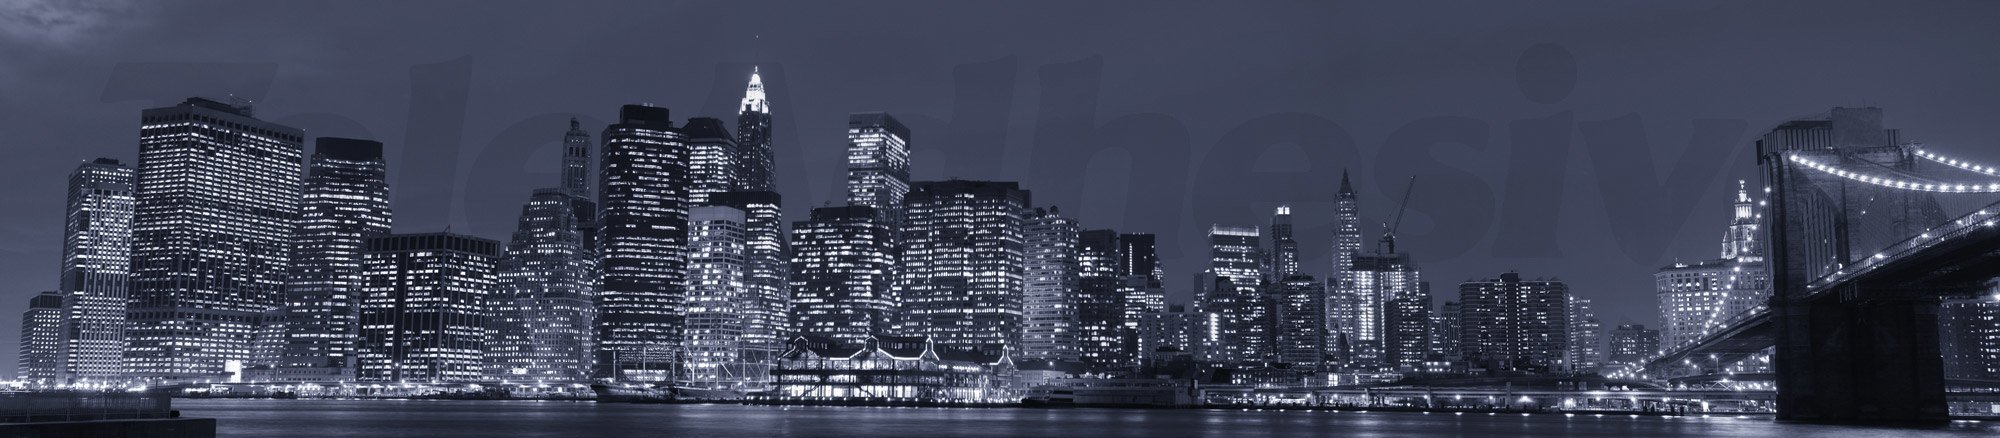 Fotomurali : Panoramica di Manhattan durante la notte